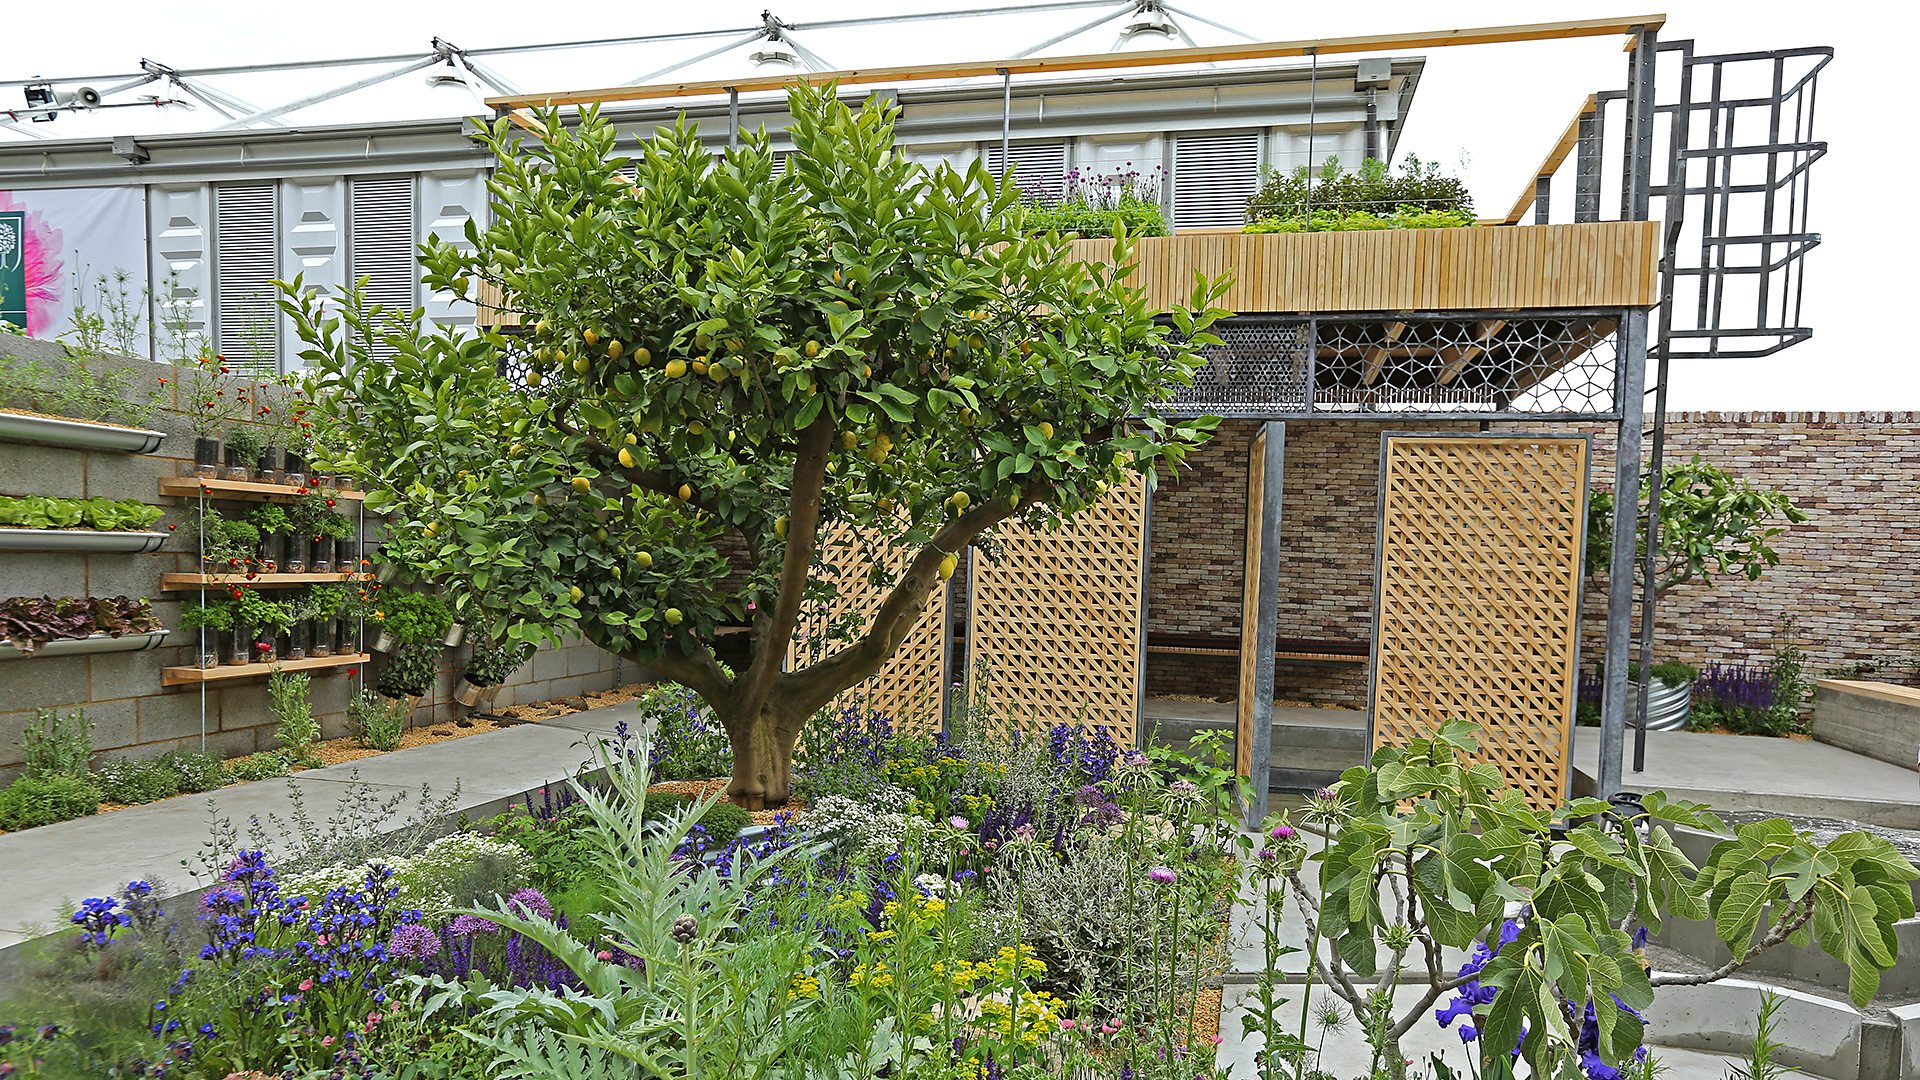 bbc two - rhs chelsea flower show - the lemon tree trust garden